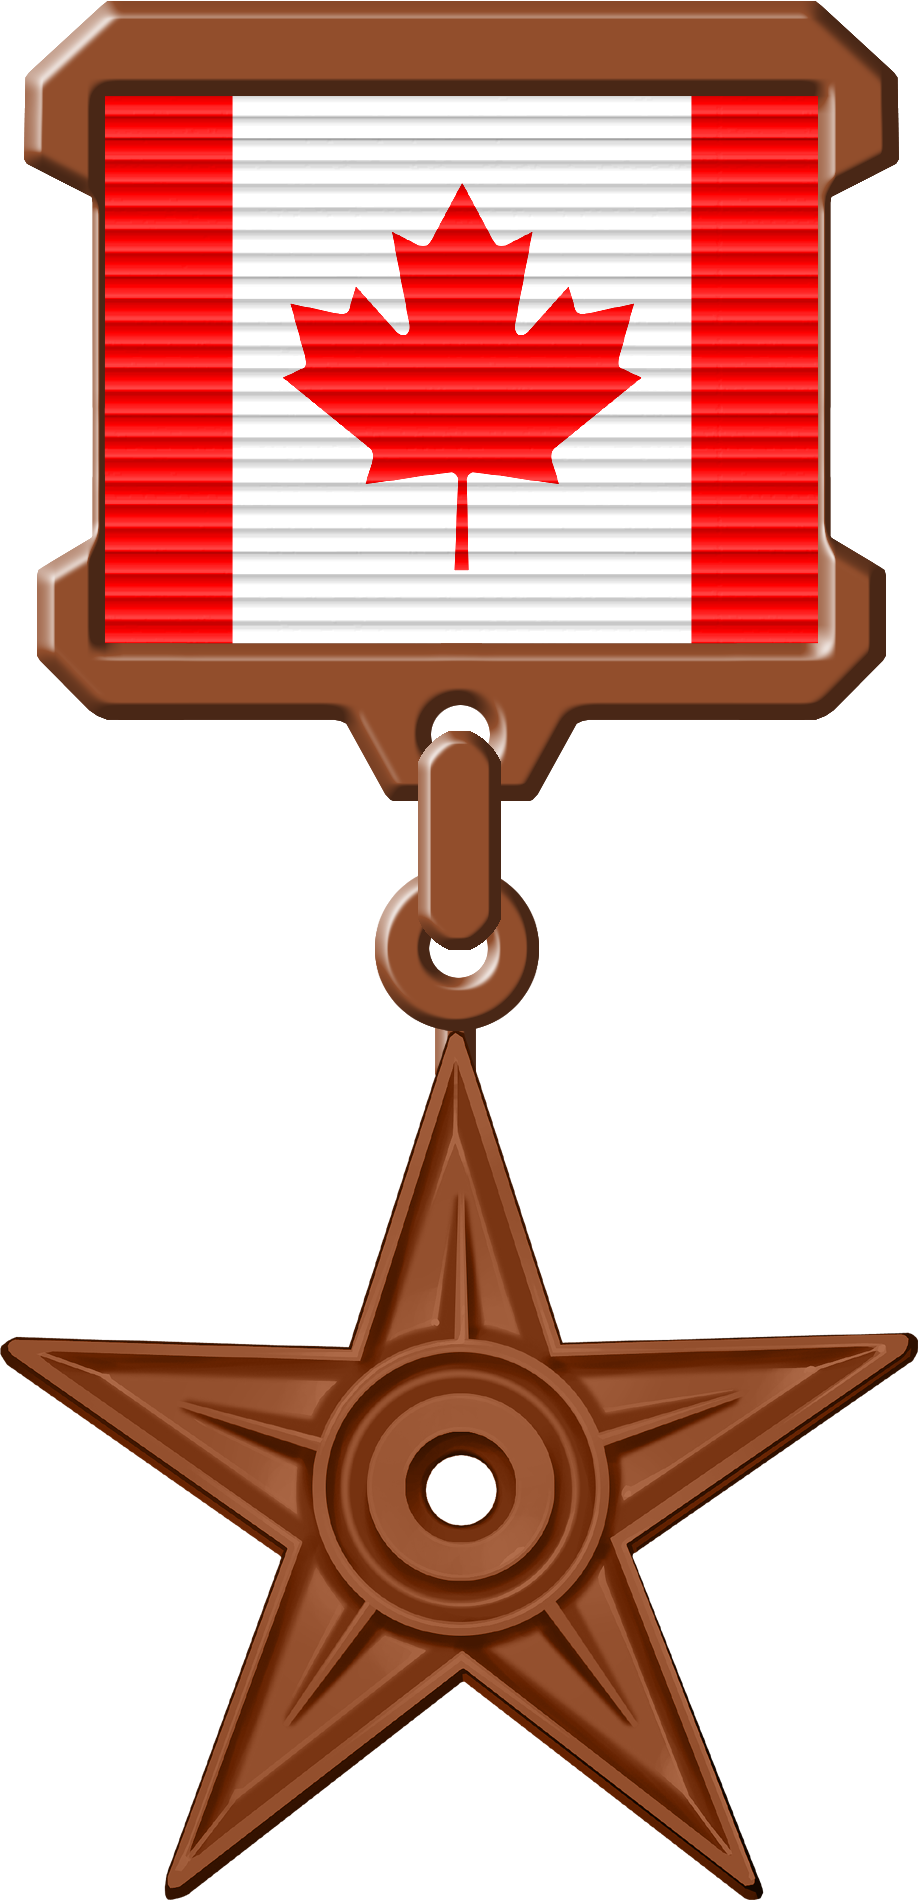 Орден #10 «Орден Канады», присвоен 17 октября 2012 участником Zanka за «доработку статьи Оттава до уровня избранной»